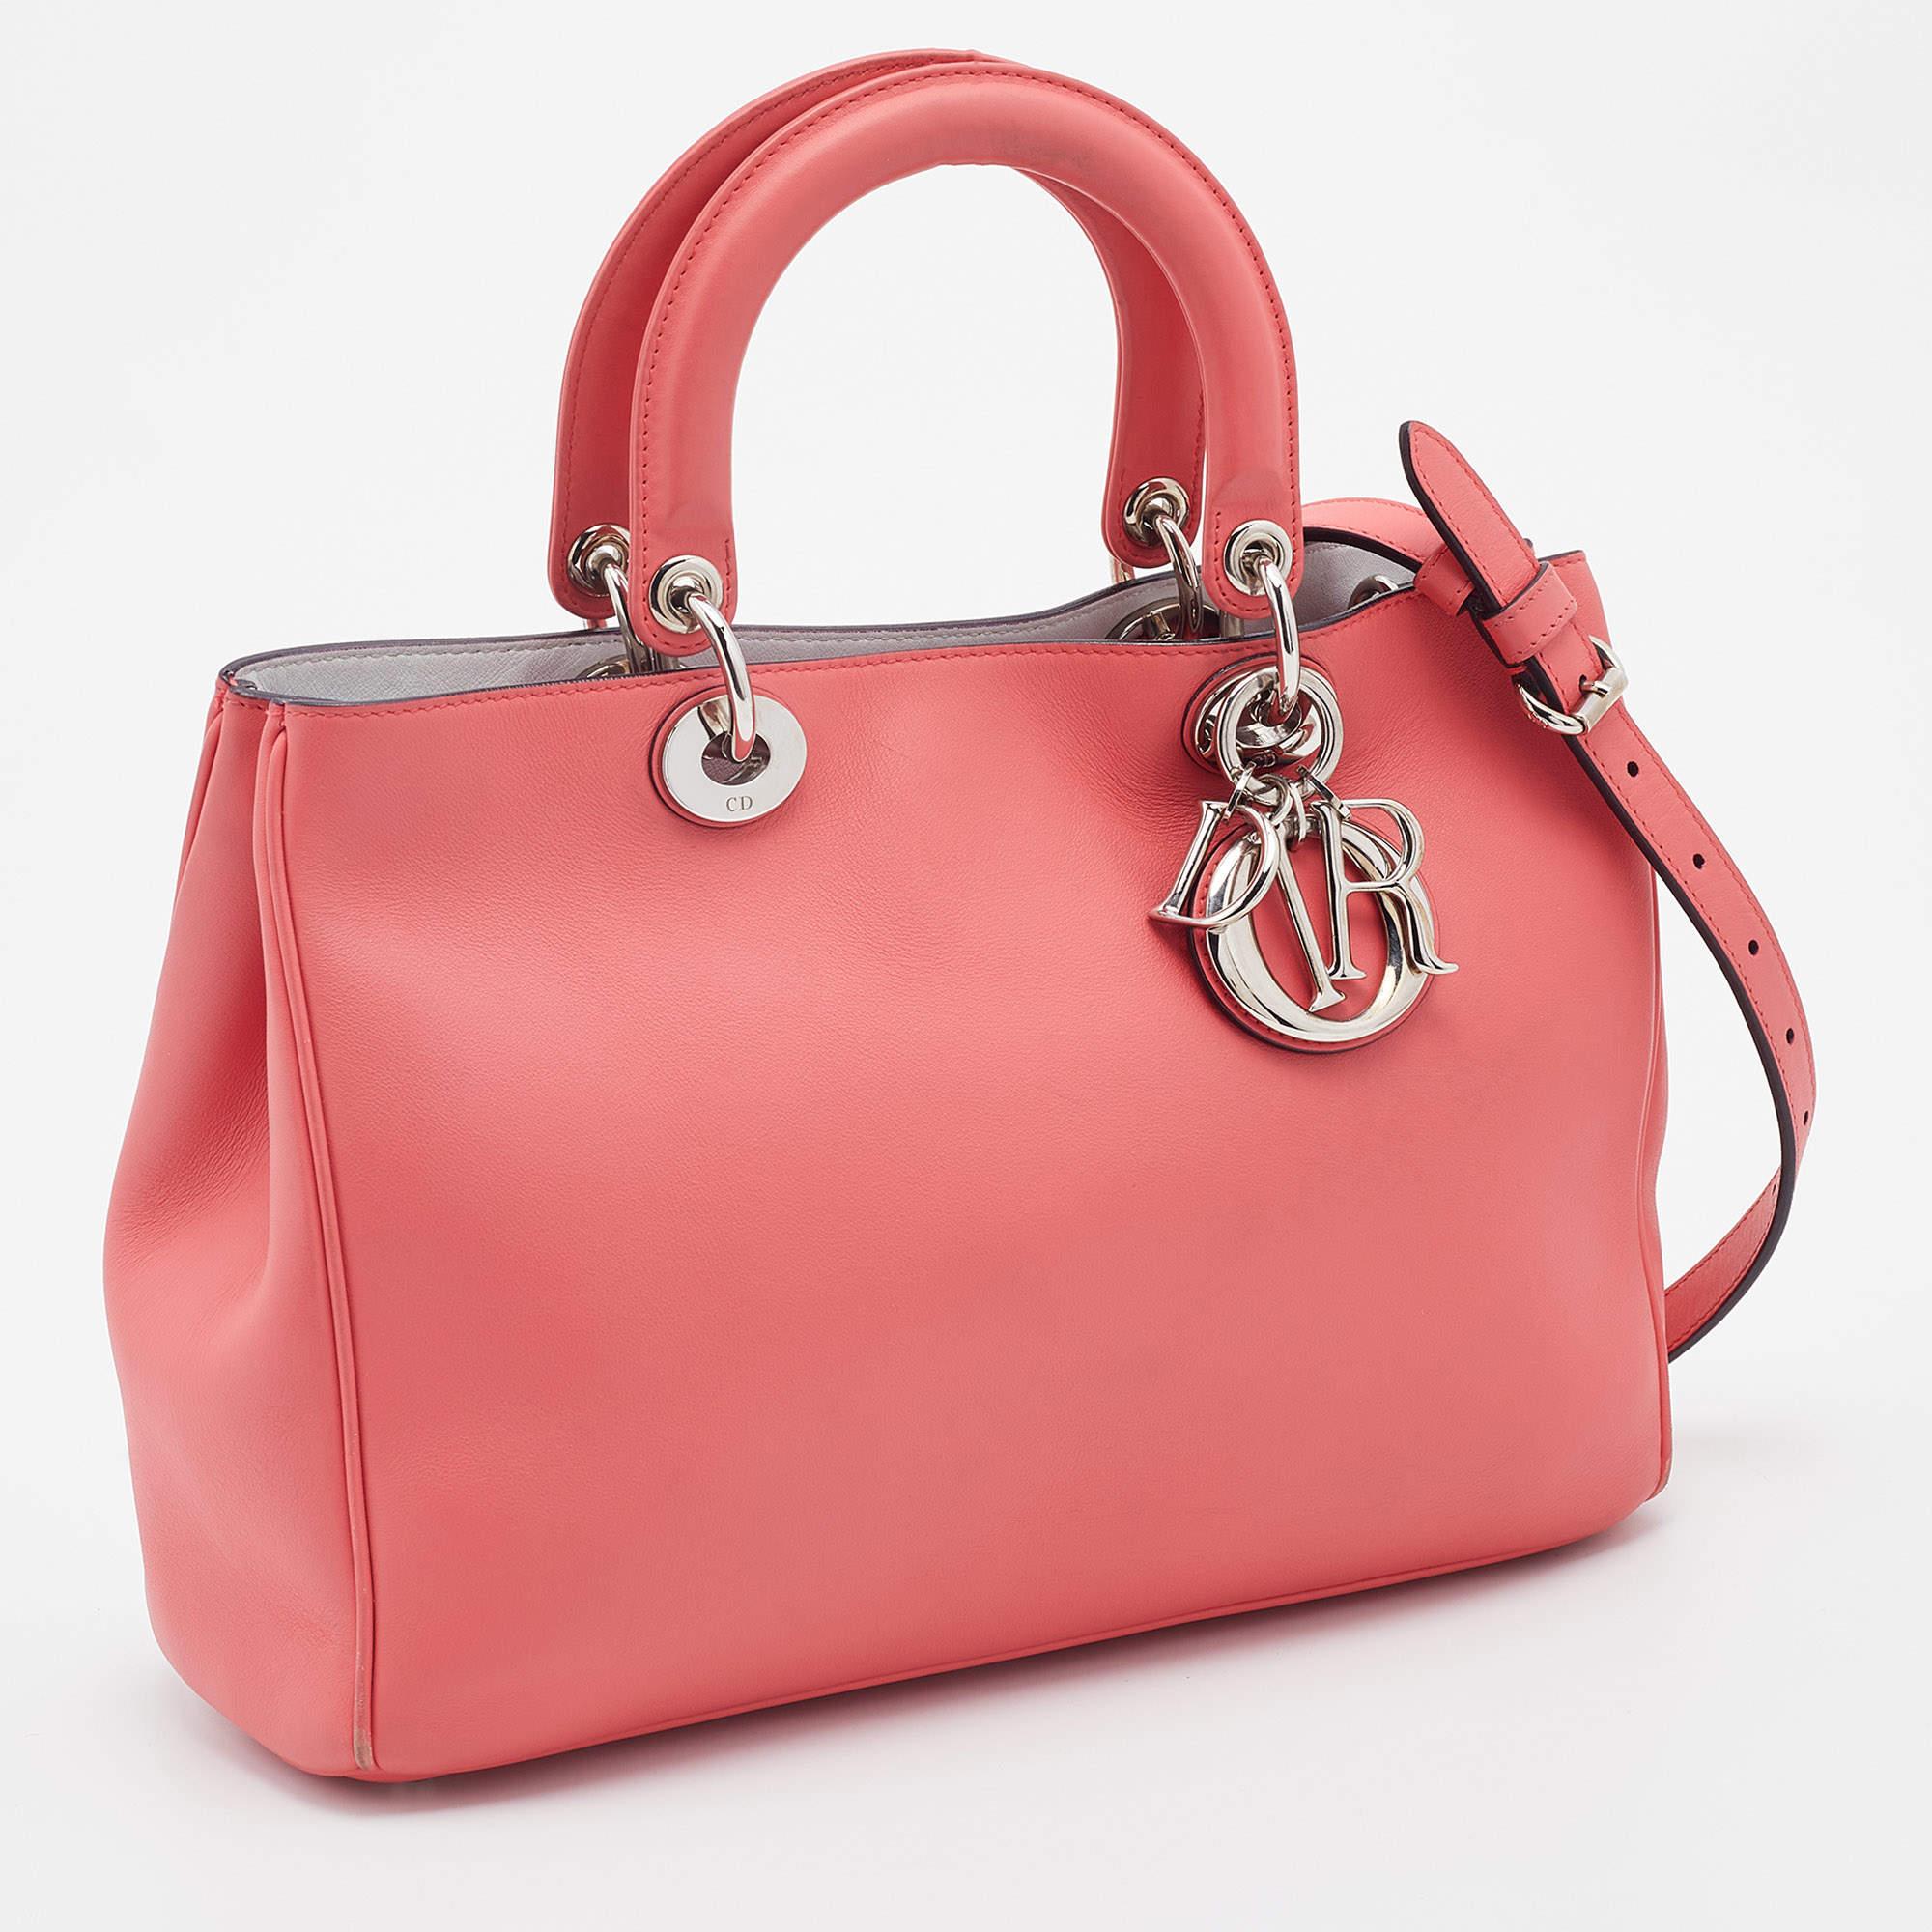 Dior Coral Pink Leather Medium Diorissimo Shopper Tote 1